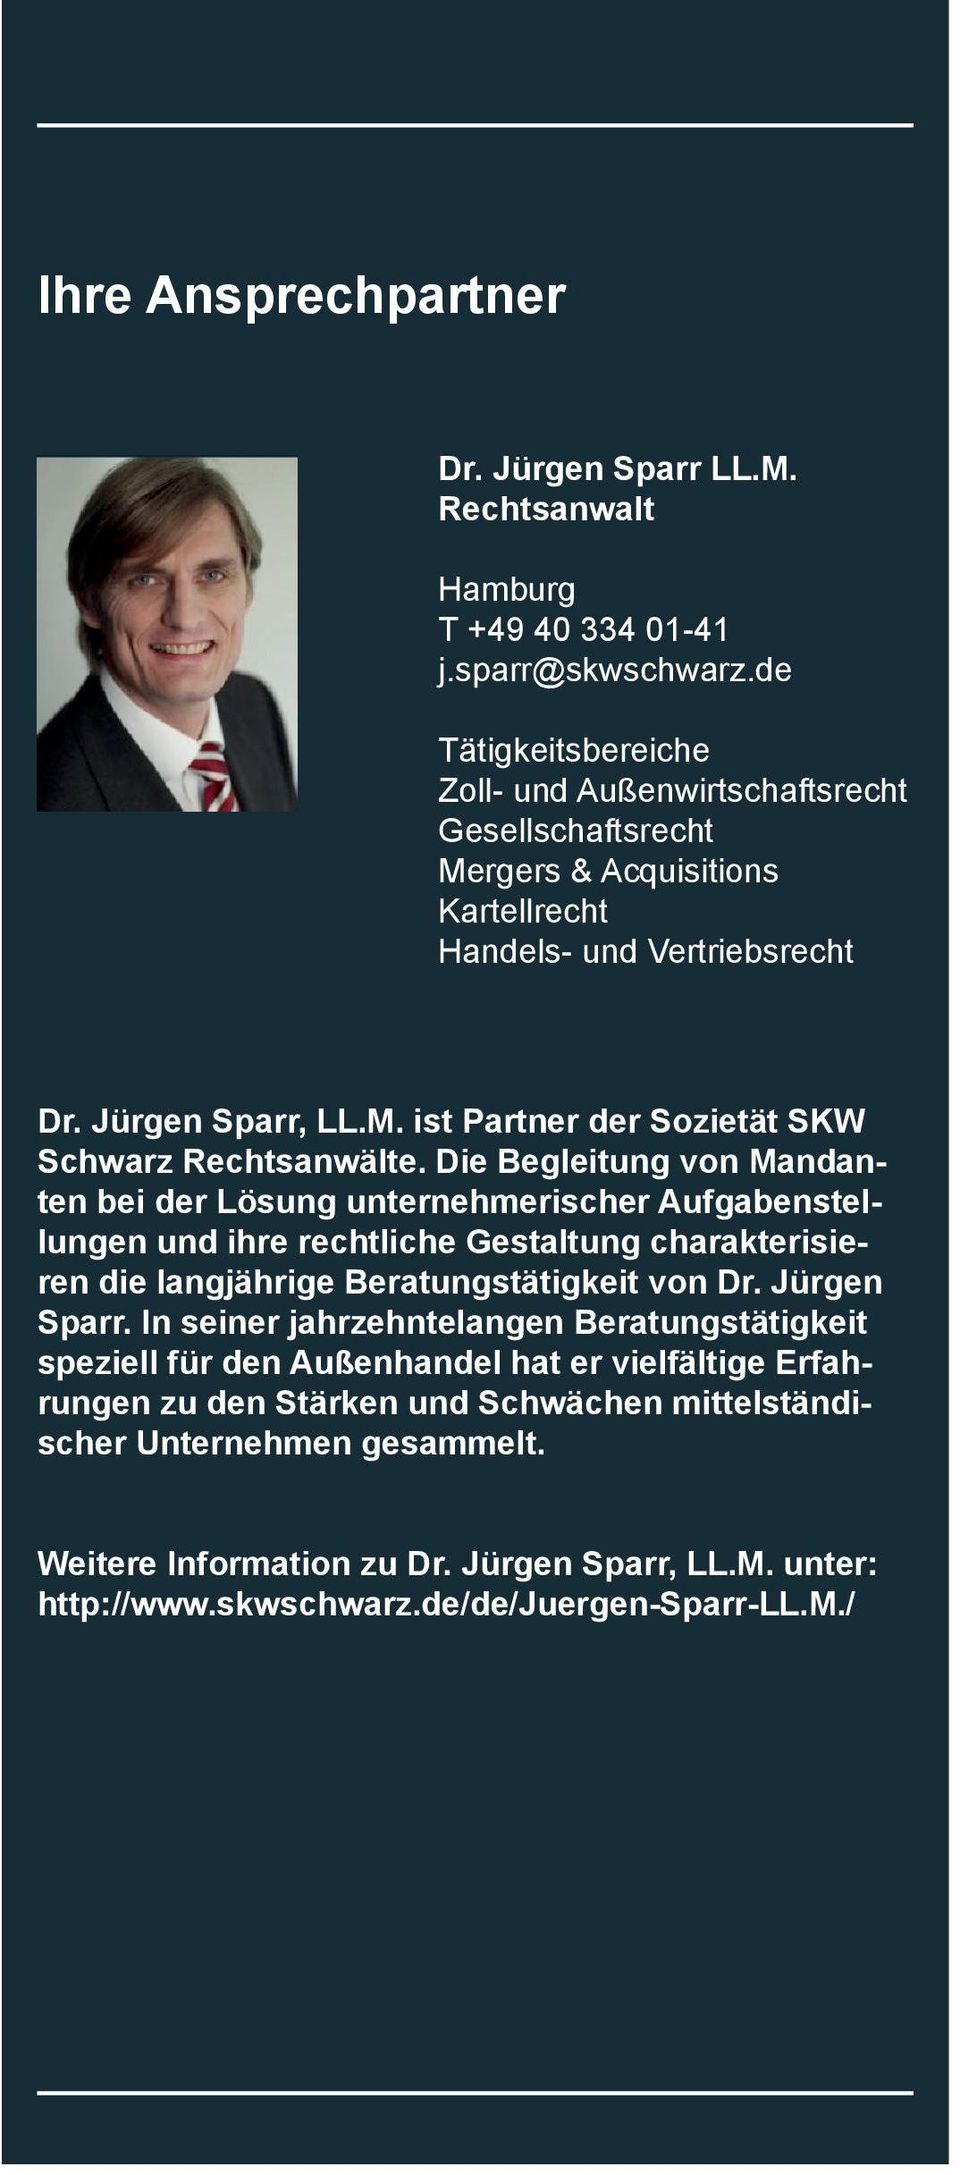 Die Begleitung von Mandanten bei der Lösung unternehmerischer Aufgabenstellungen und ihre rechtliche Gestaltung charakterisieren die langjährige Beratungstätigkeit von Dr. Jürgen Sparr.